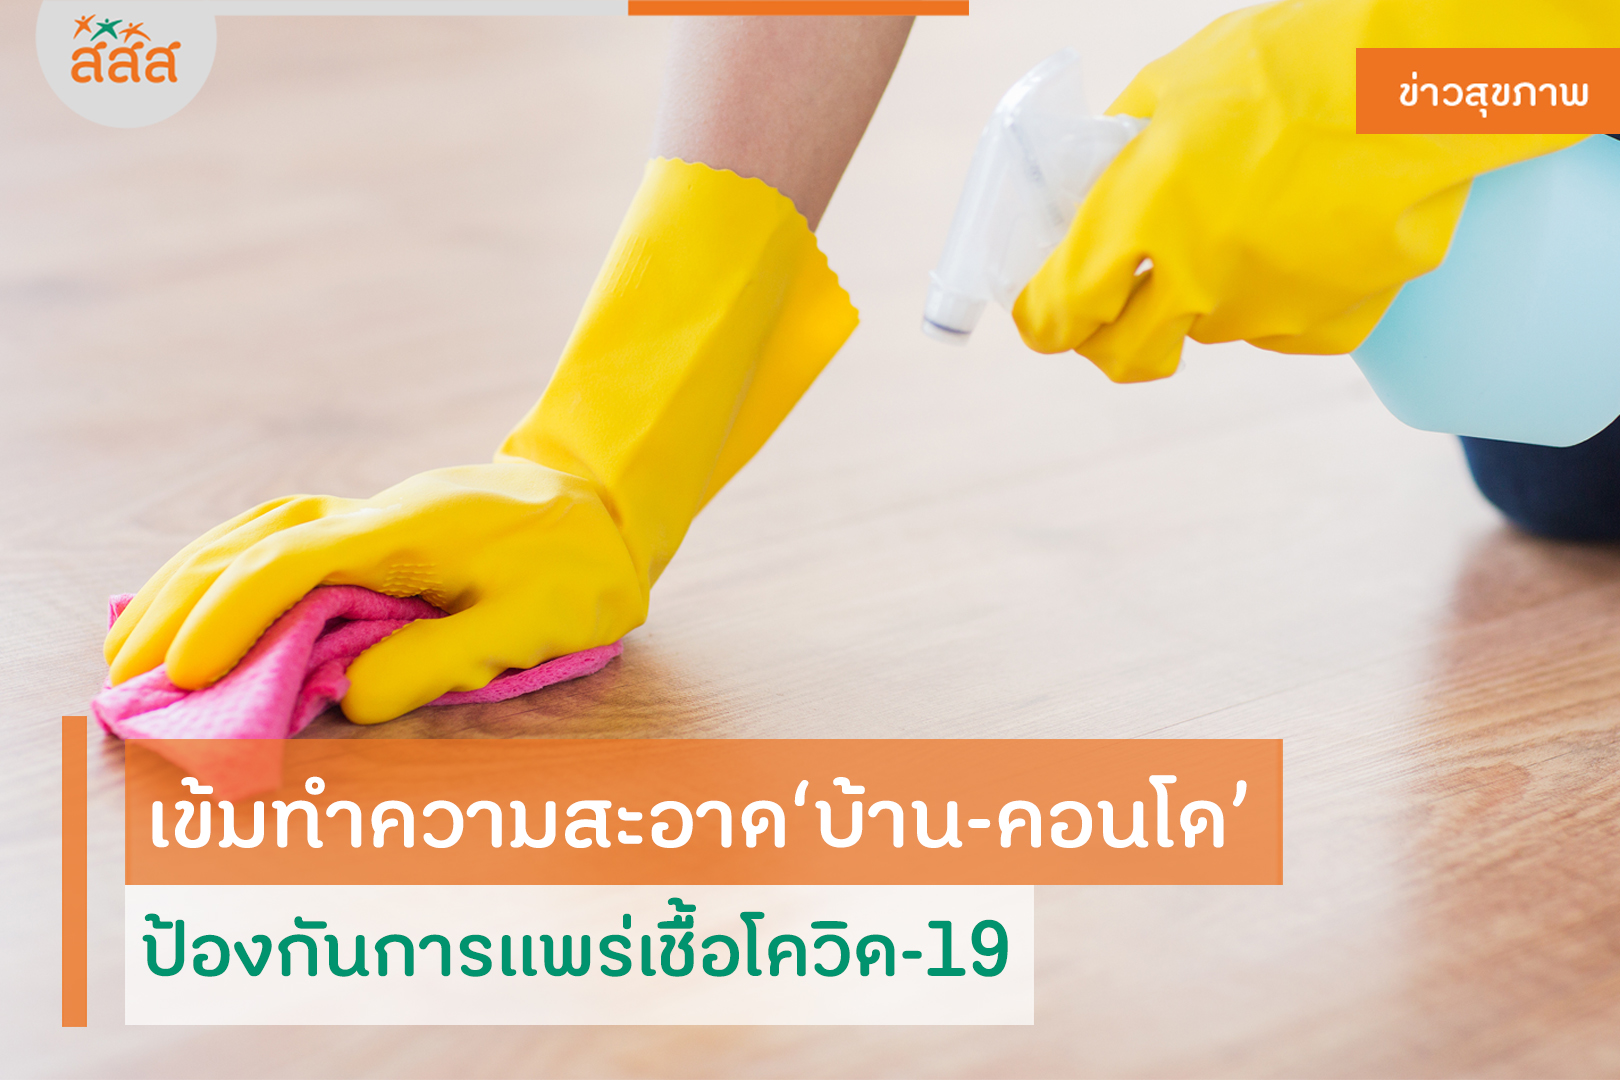 เข้มทำความสะอาด บ้าน-คอนโด ป้องกันการแพร่เชื้อโควิด-19 thaihealth